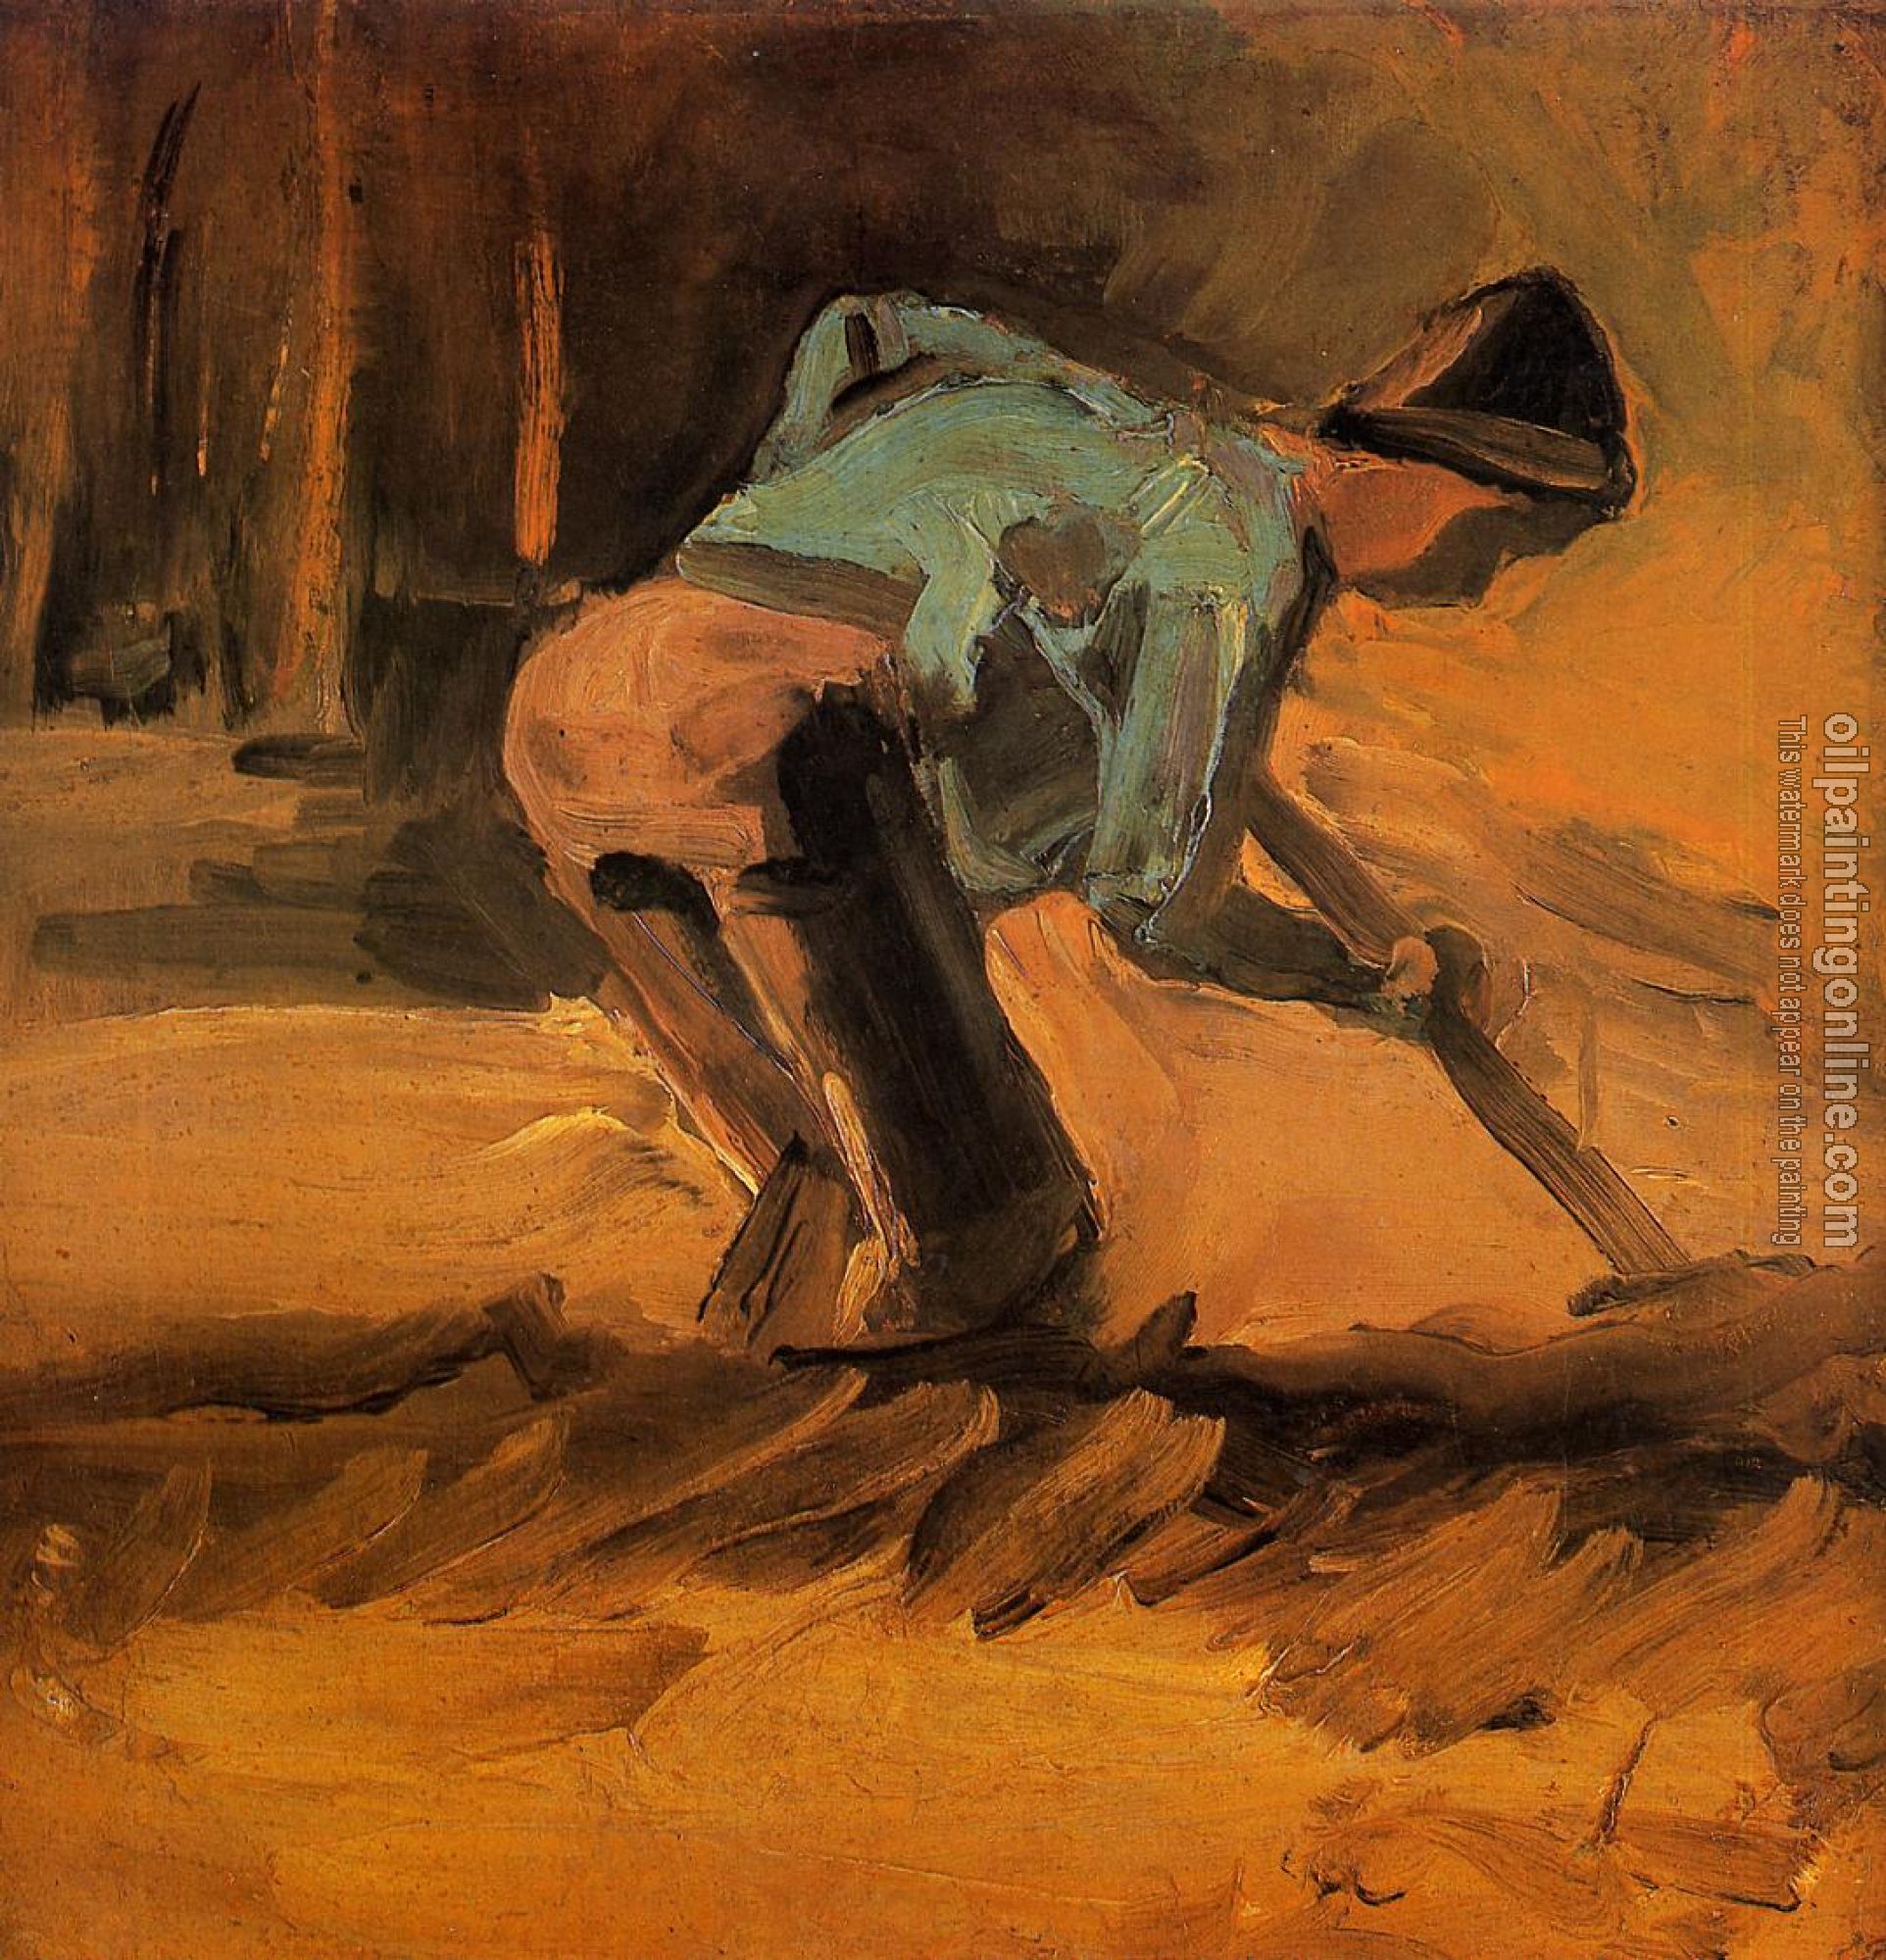 Gogh, Vincent van - Man Digging